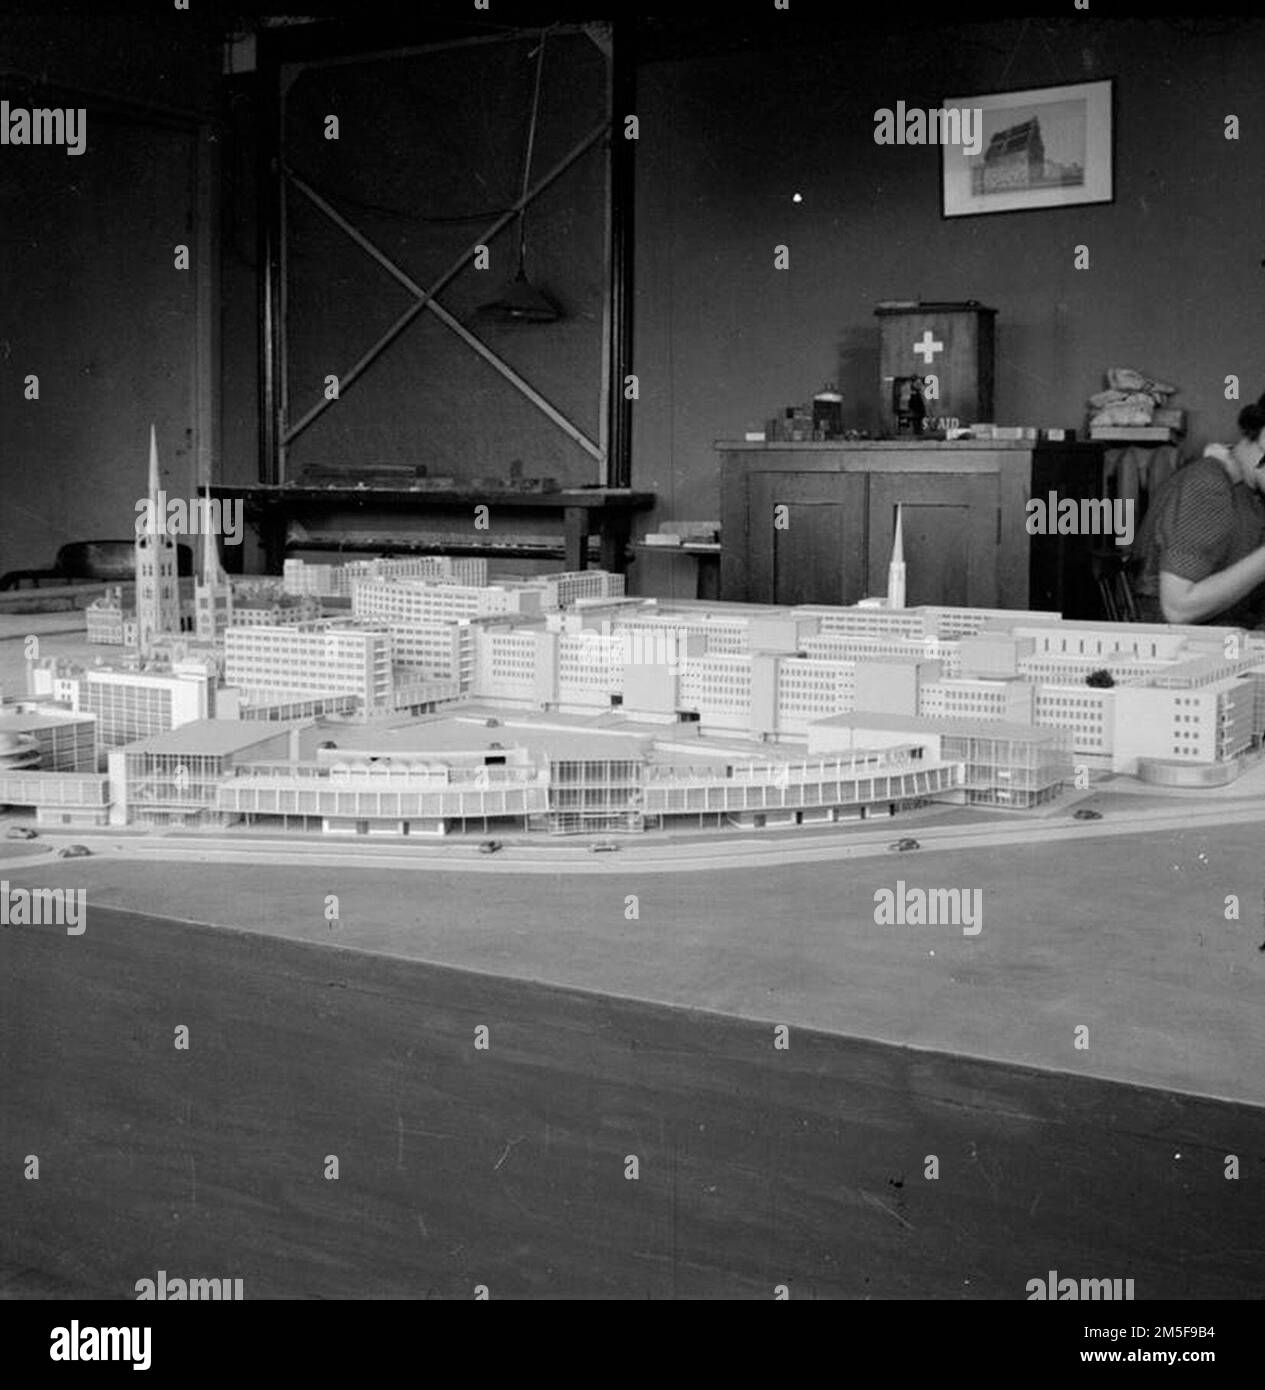 Une partie du modèle préparé aux plans de Donald Gibson (architecte de la ville de Coventry) pour la reconstruction d'après-guerre du centre-ville endommagé par une bombe de Coventry Banque D'Images